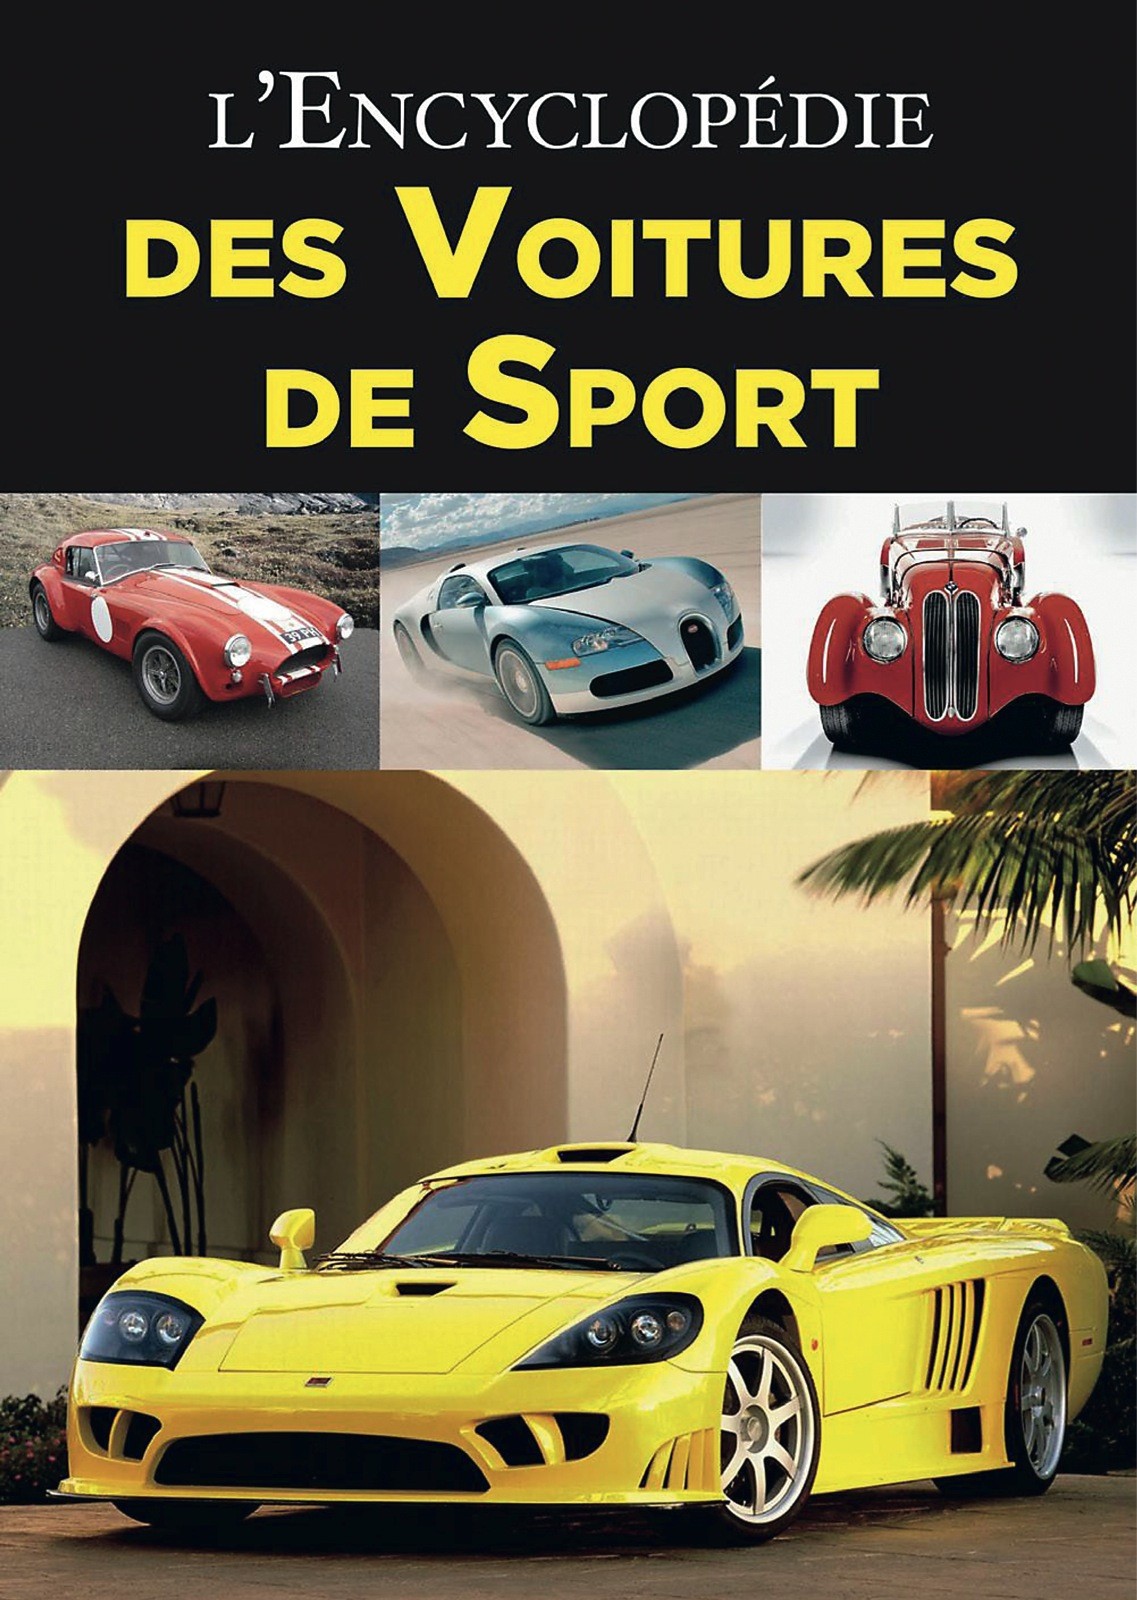 L'encyclopédie des voitures de sport